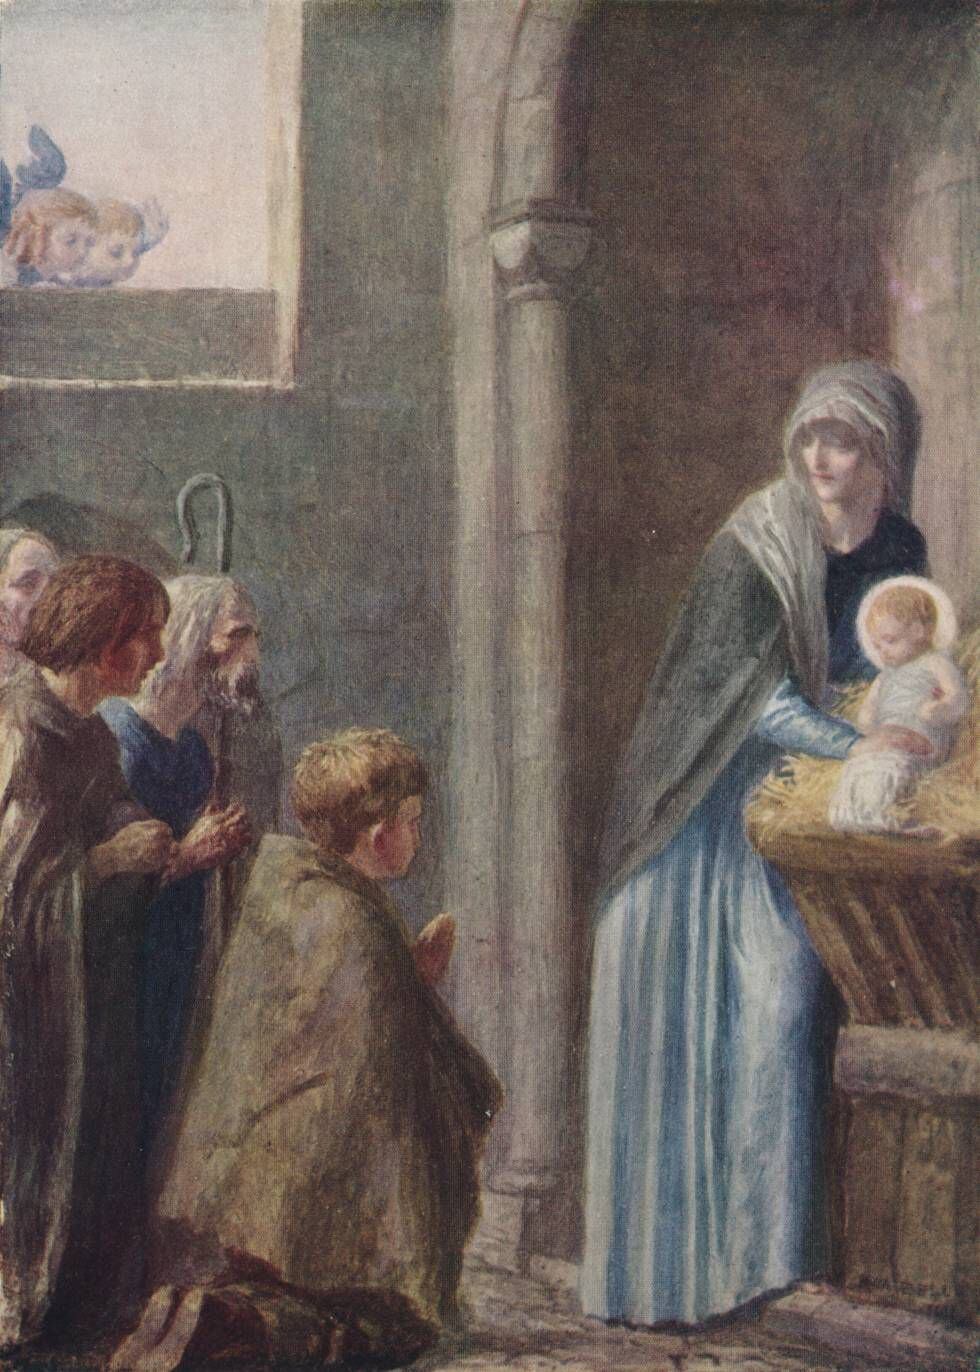 En esta pintura de Robert Anning Bell del siglo XIX ya se representa a los tres reyes magos adorando al niño Jesús.